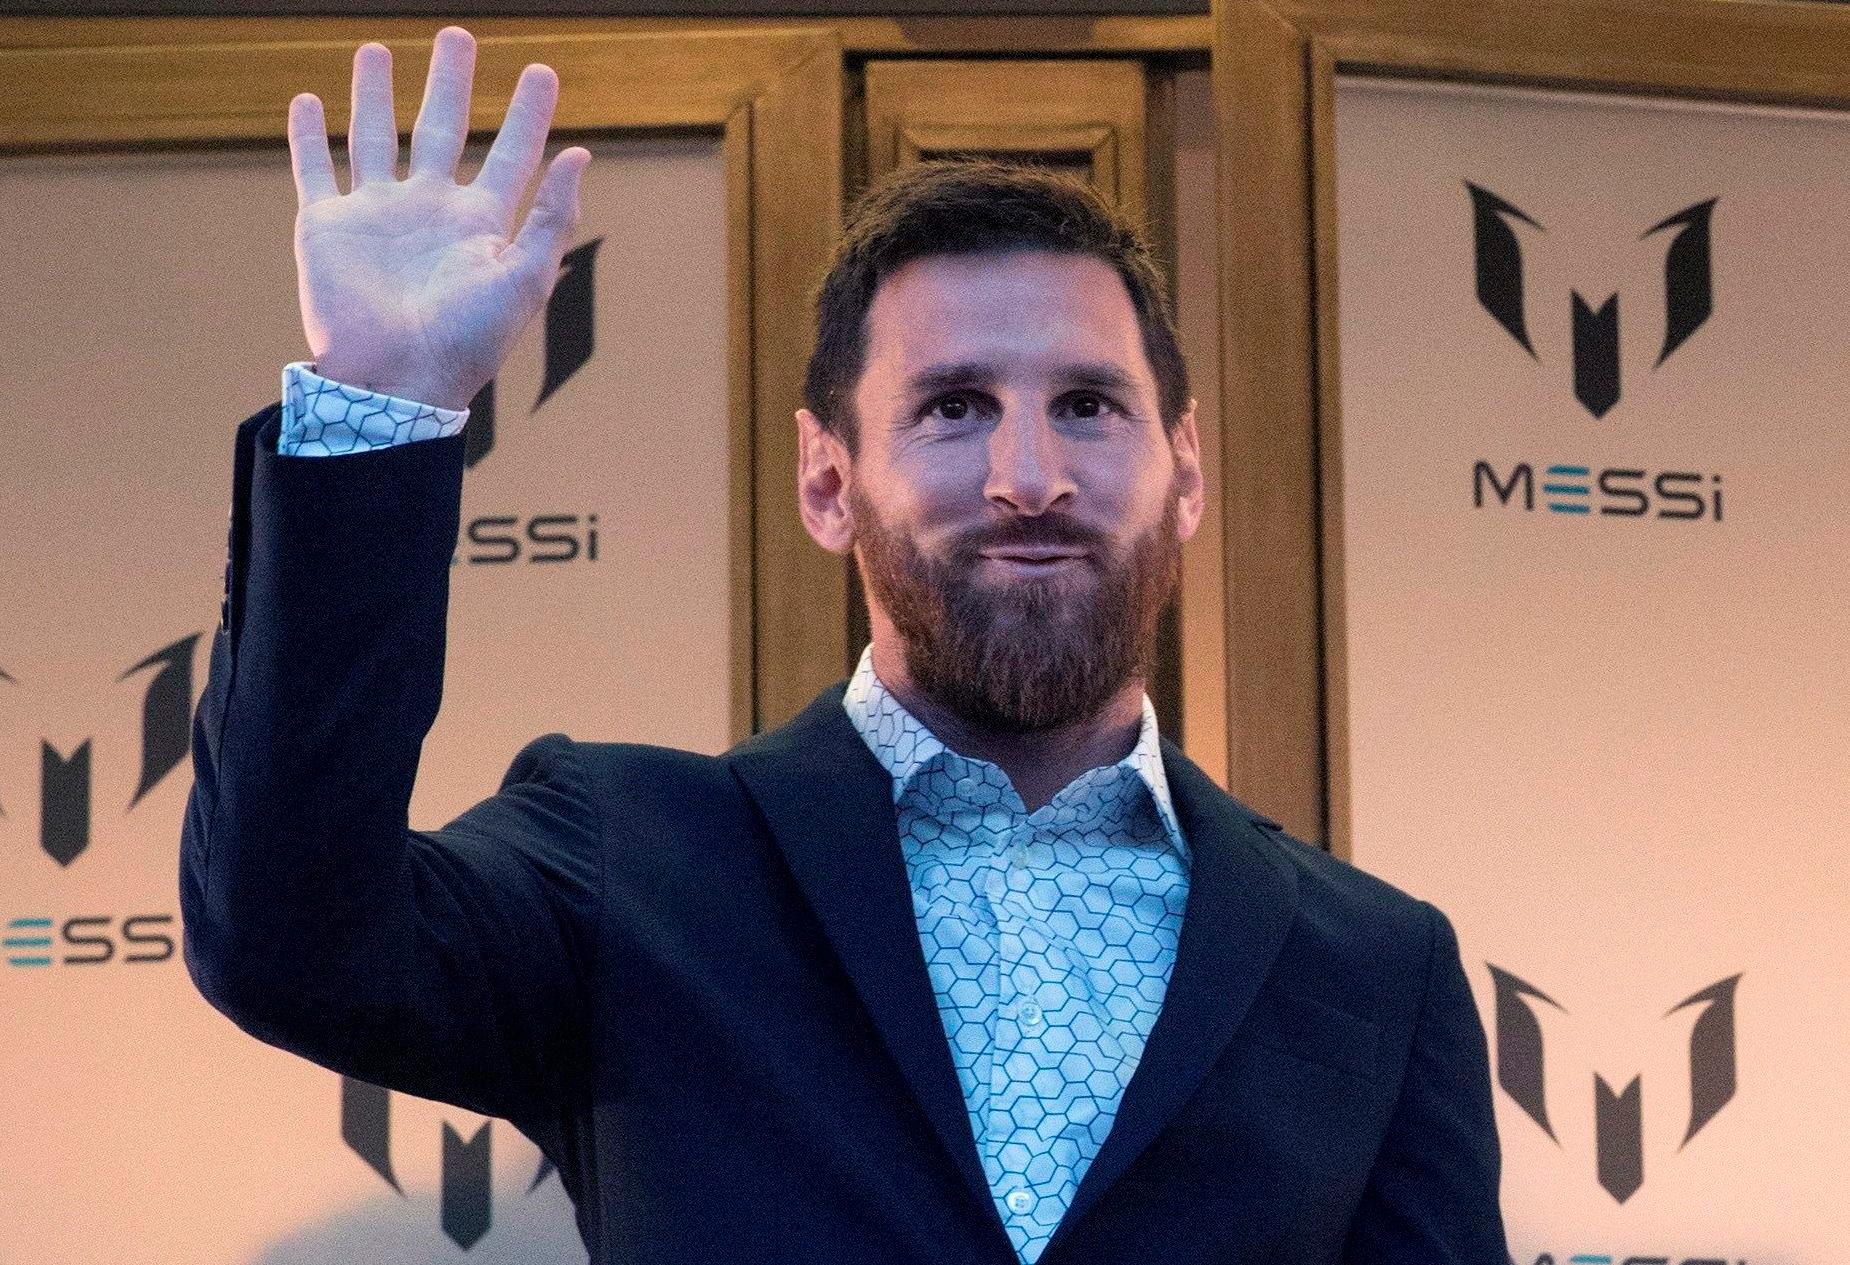 La juez archiva la denuncia contra Leo Messi por delitos contables, fiscal, estafa y blanqueo